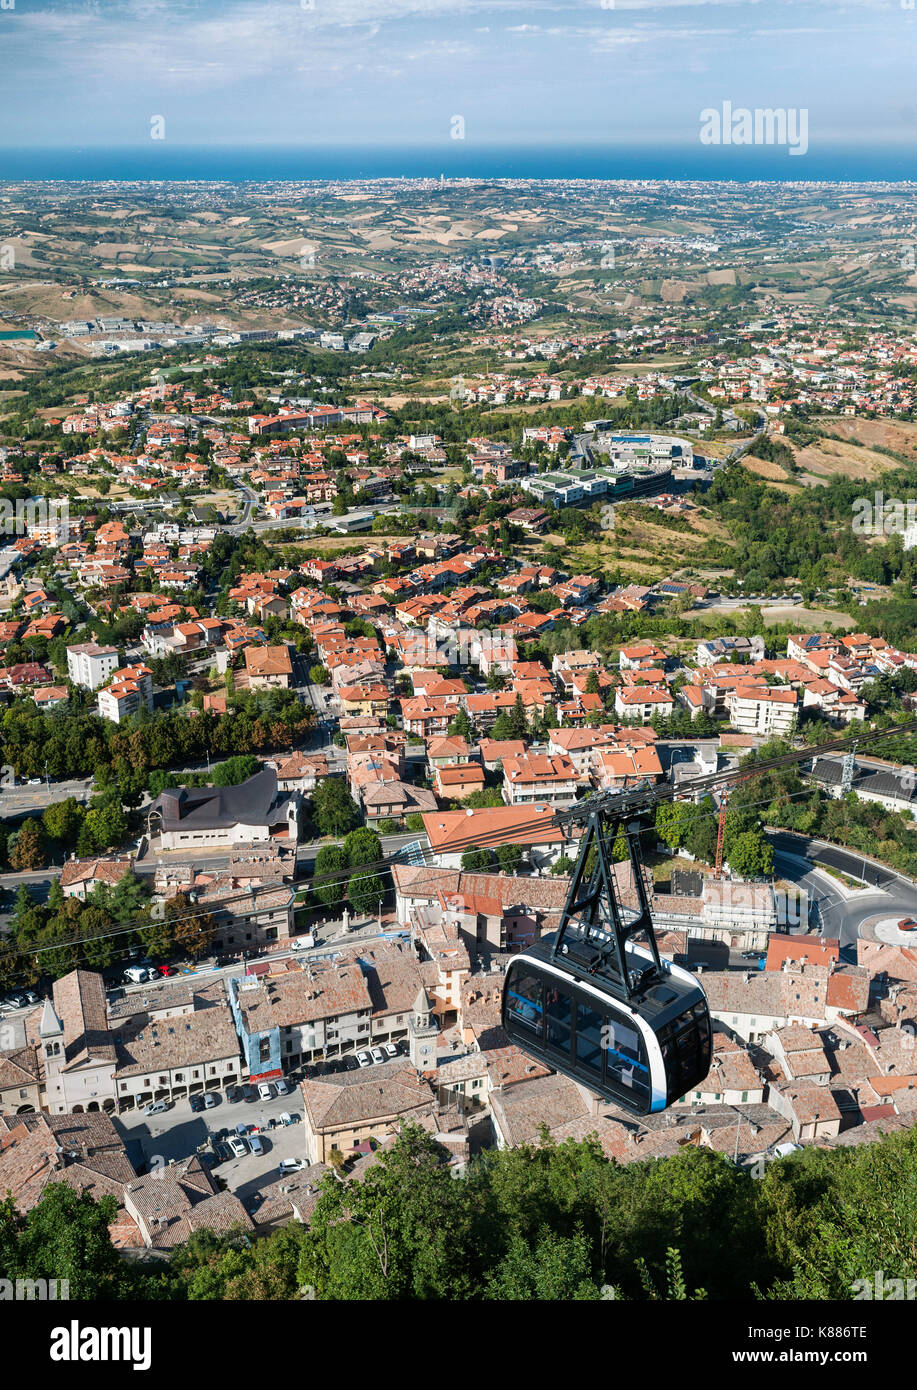 Vista de un coche teleférico de San Marino y los alrededores del territorio de San Marino y de la región de Emilia-Romaña, Italia. Foto de stock